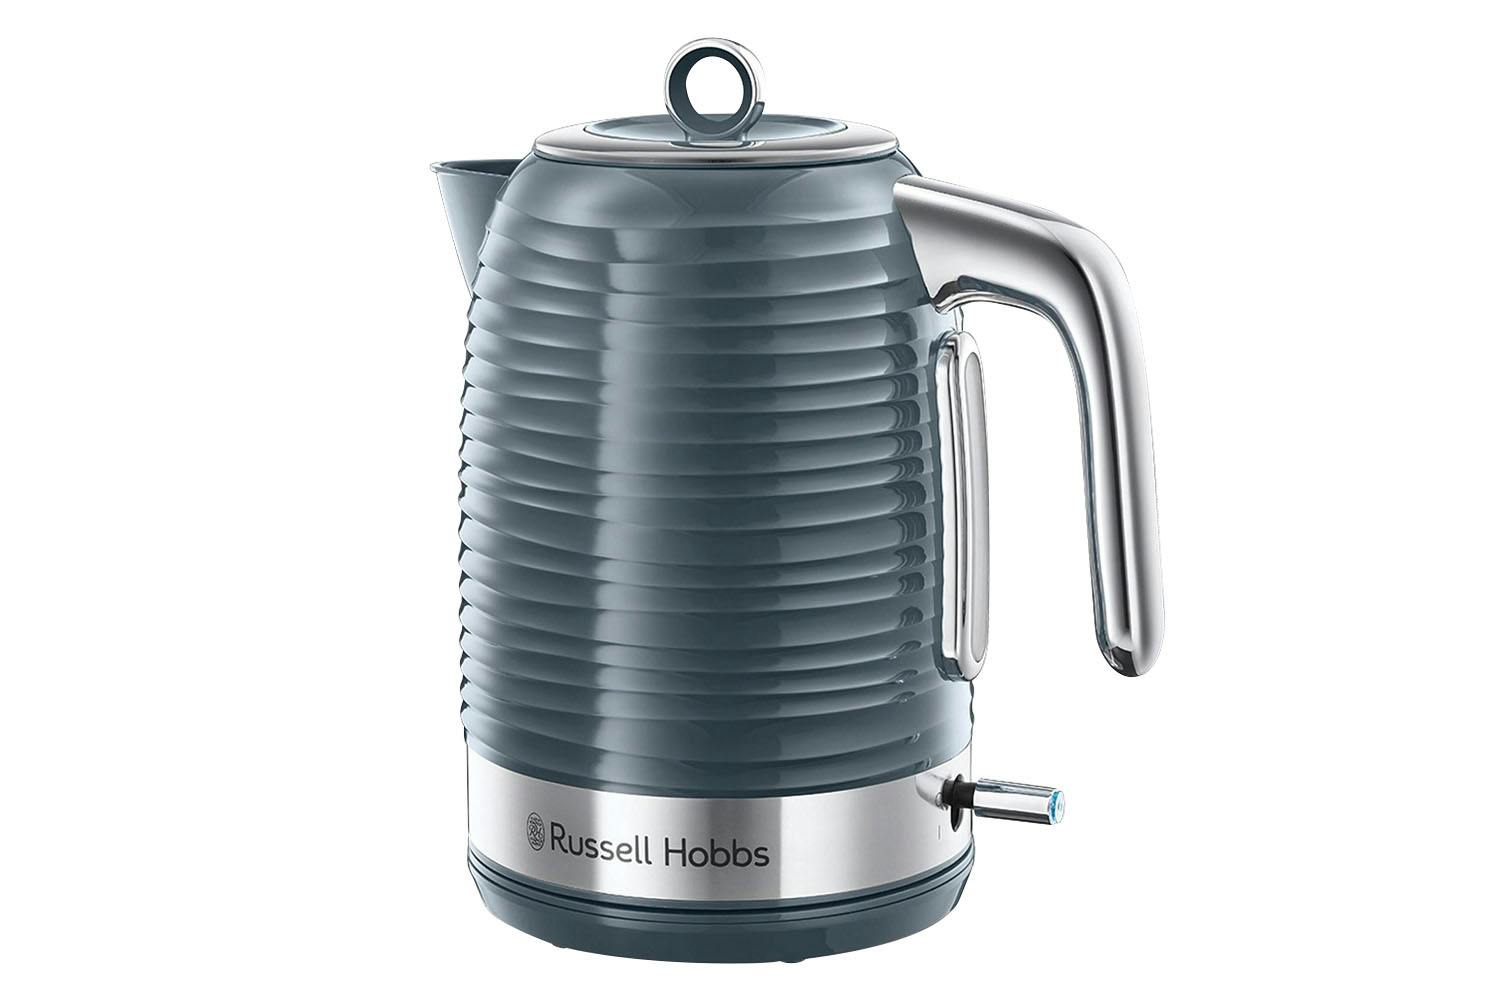 Russell Hobbs K3 Series kettle